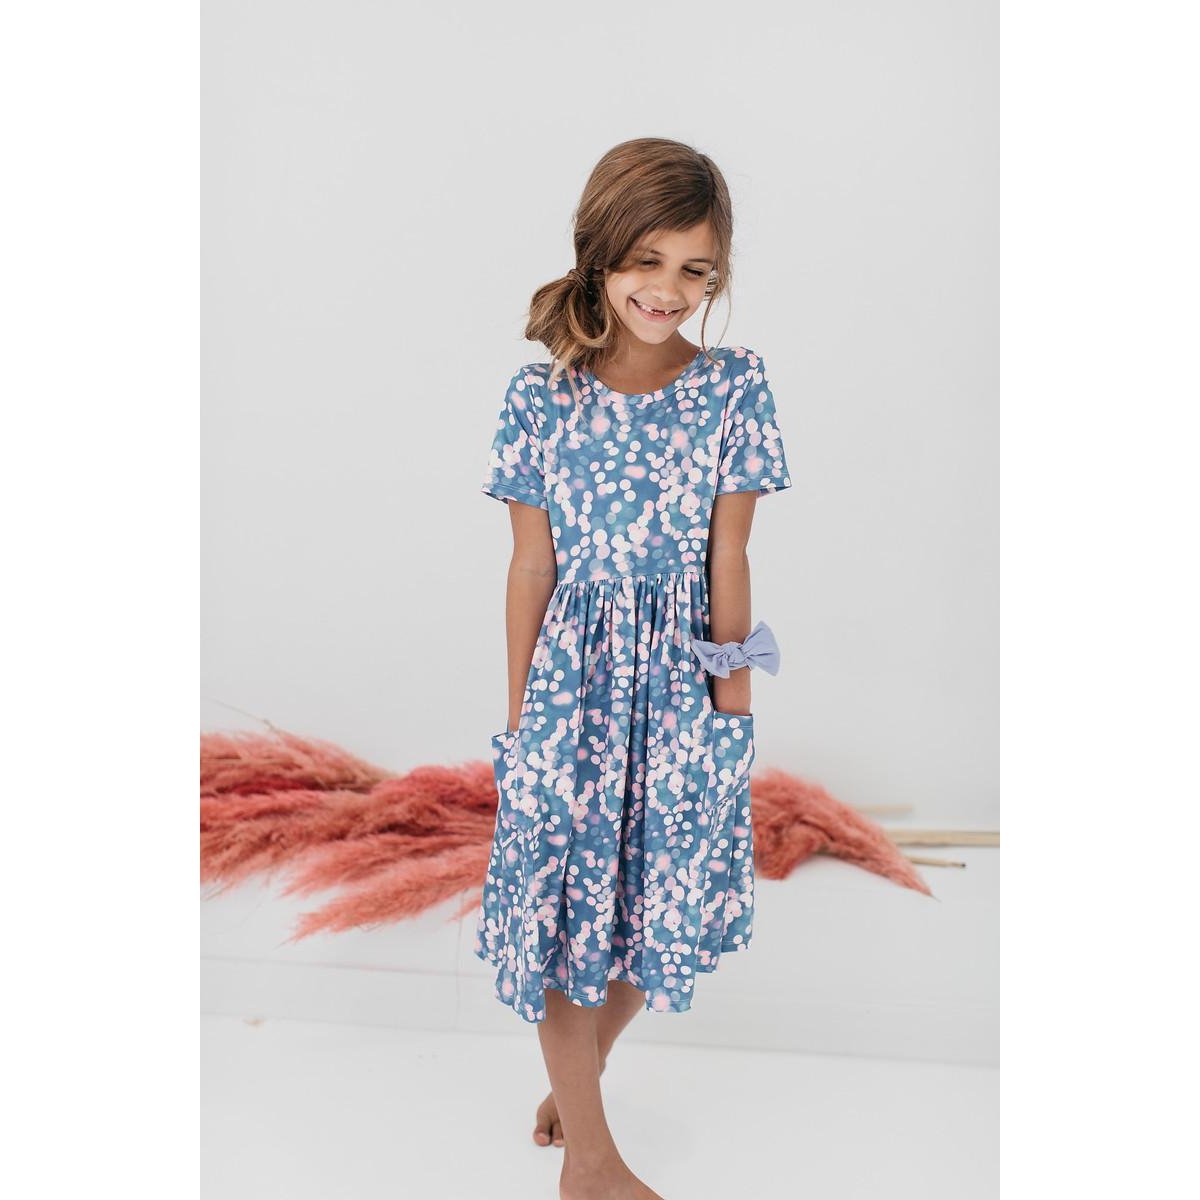 Shimmer and Shine Short Sleeve Pocket Dress  - Doodlebug's Children's Boutique